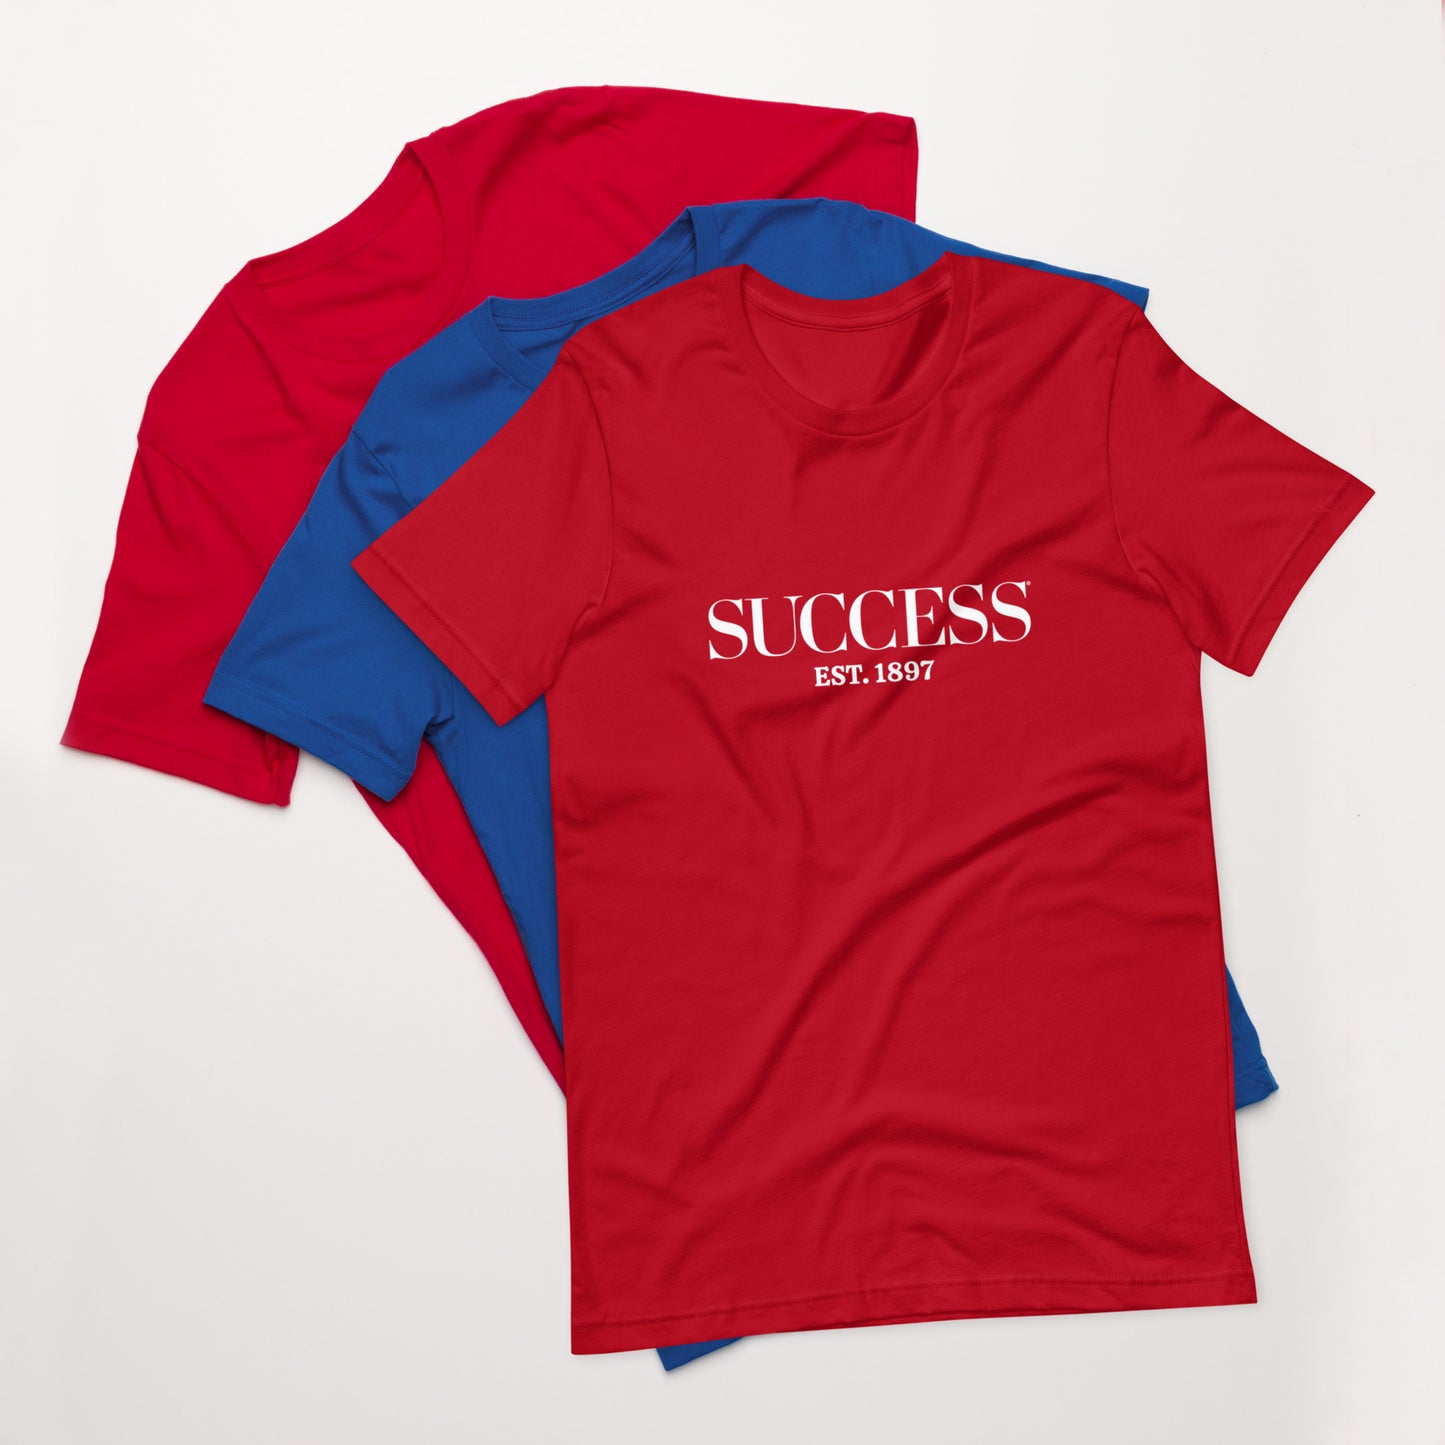 SUCCESS Est. 1897 Unisex t-shirt